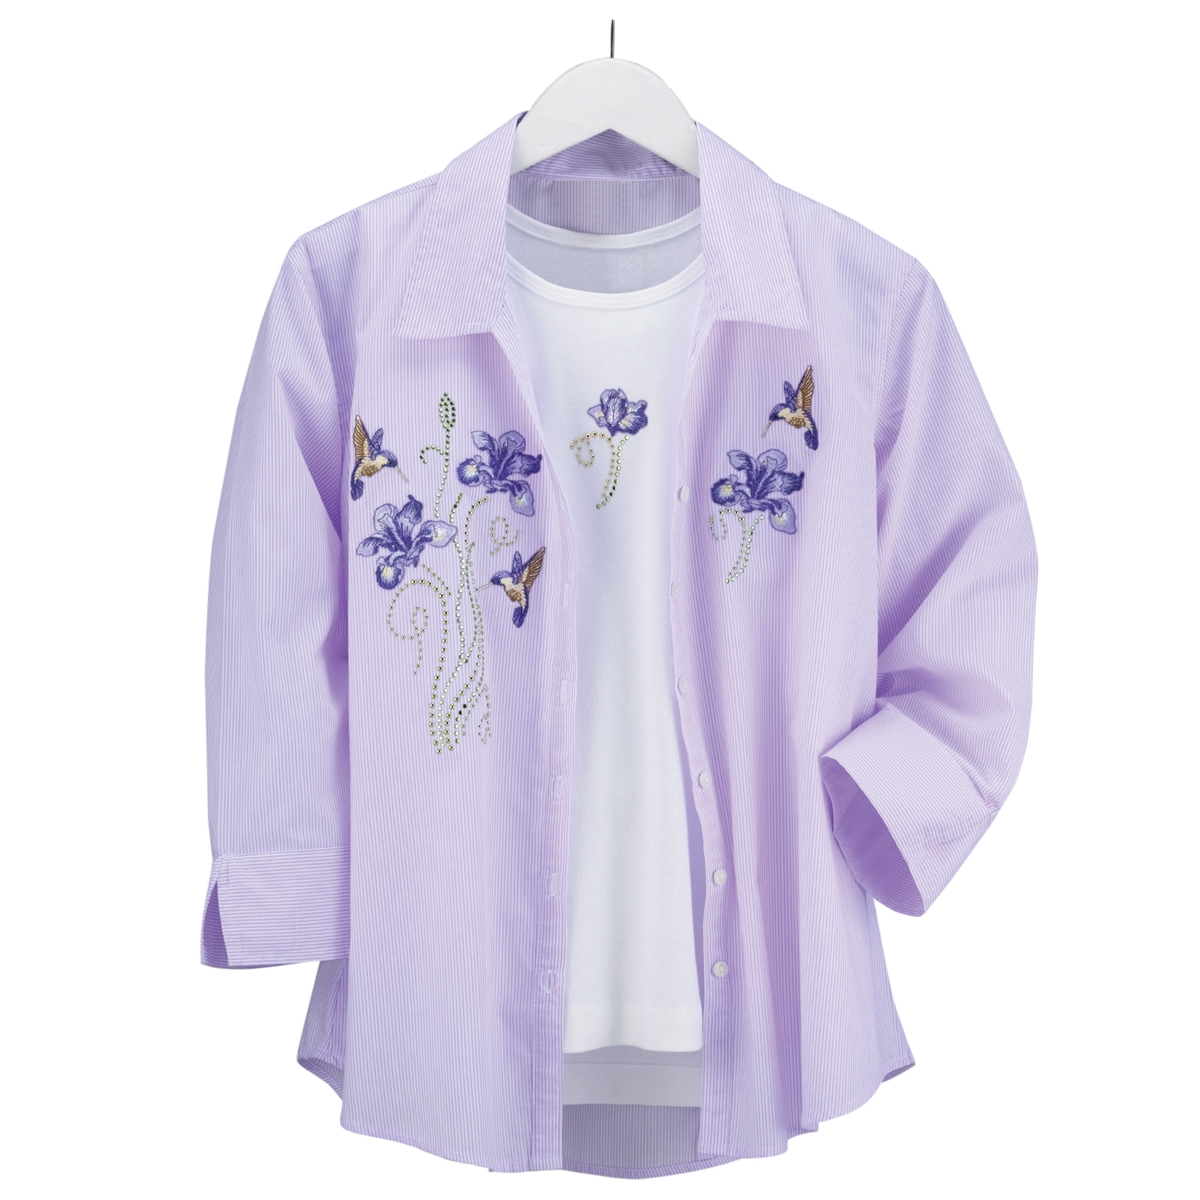 Hummingbird and Iris Shirt Set